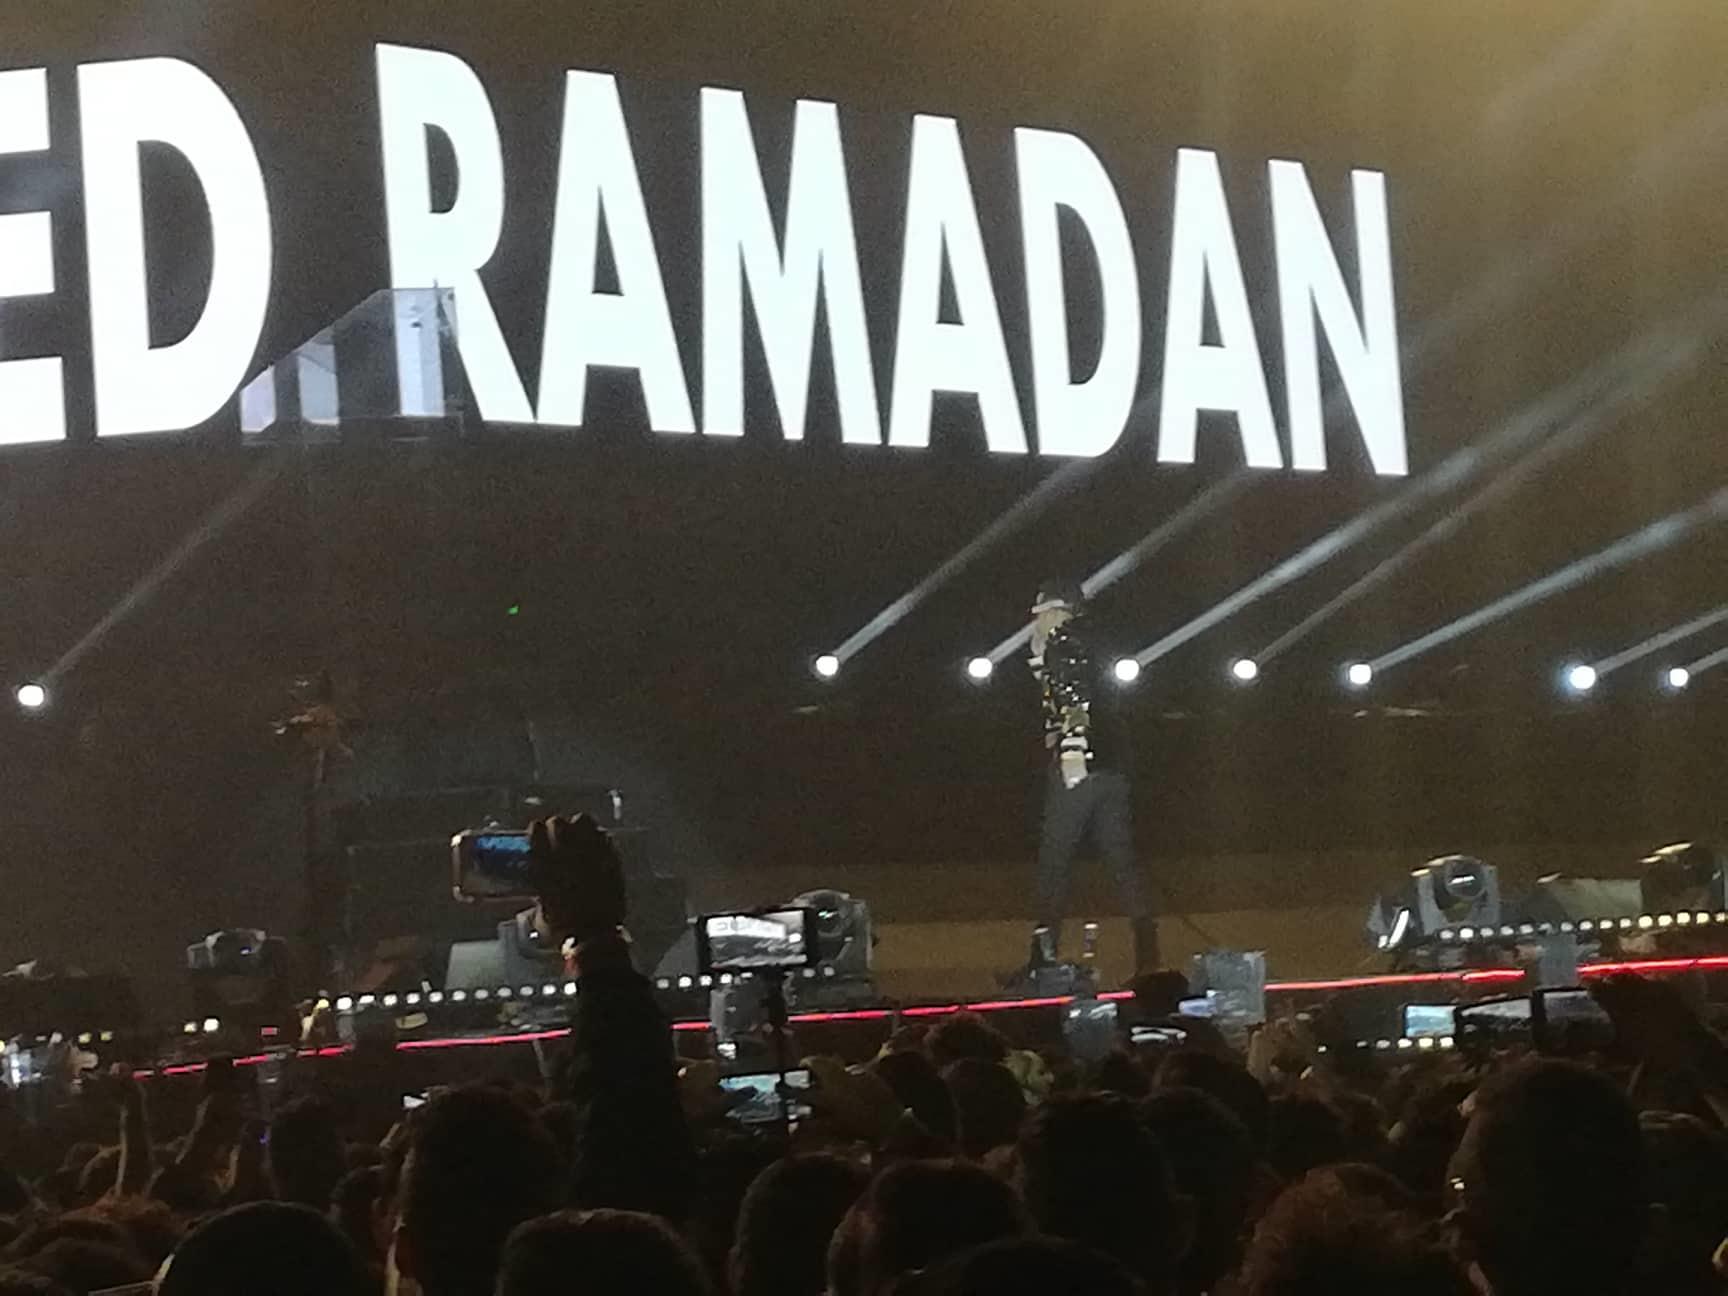 محمد رمضان يتقمص شخصية مايكل جاكسون